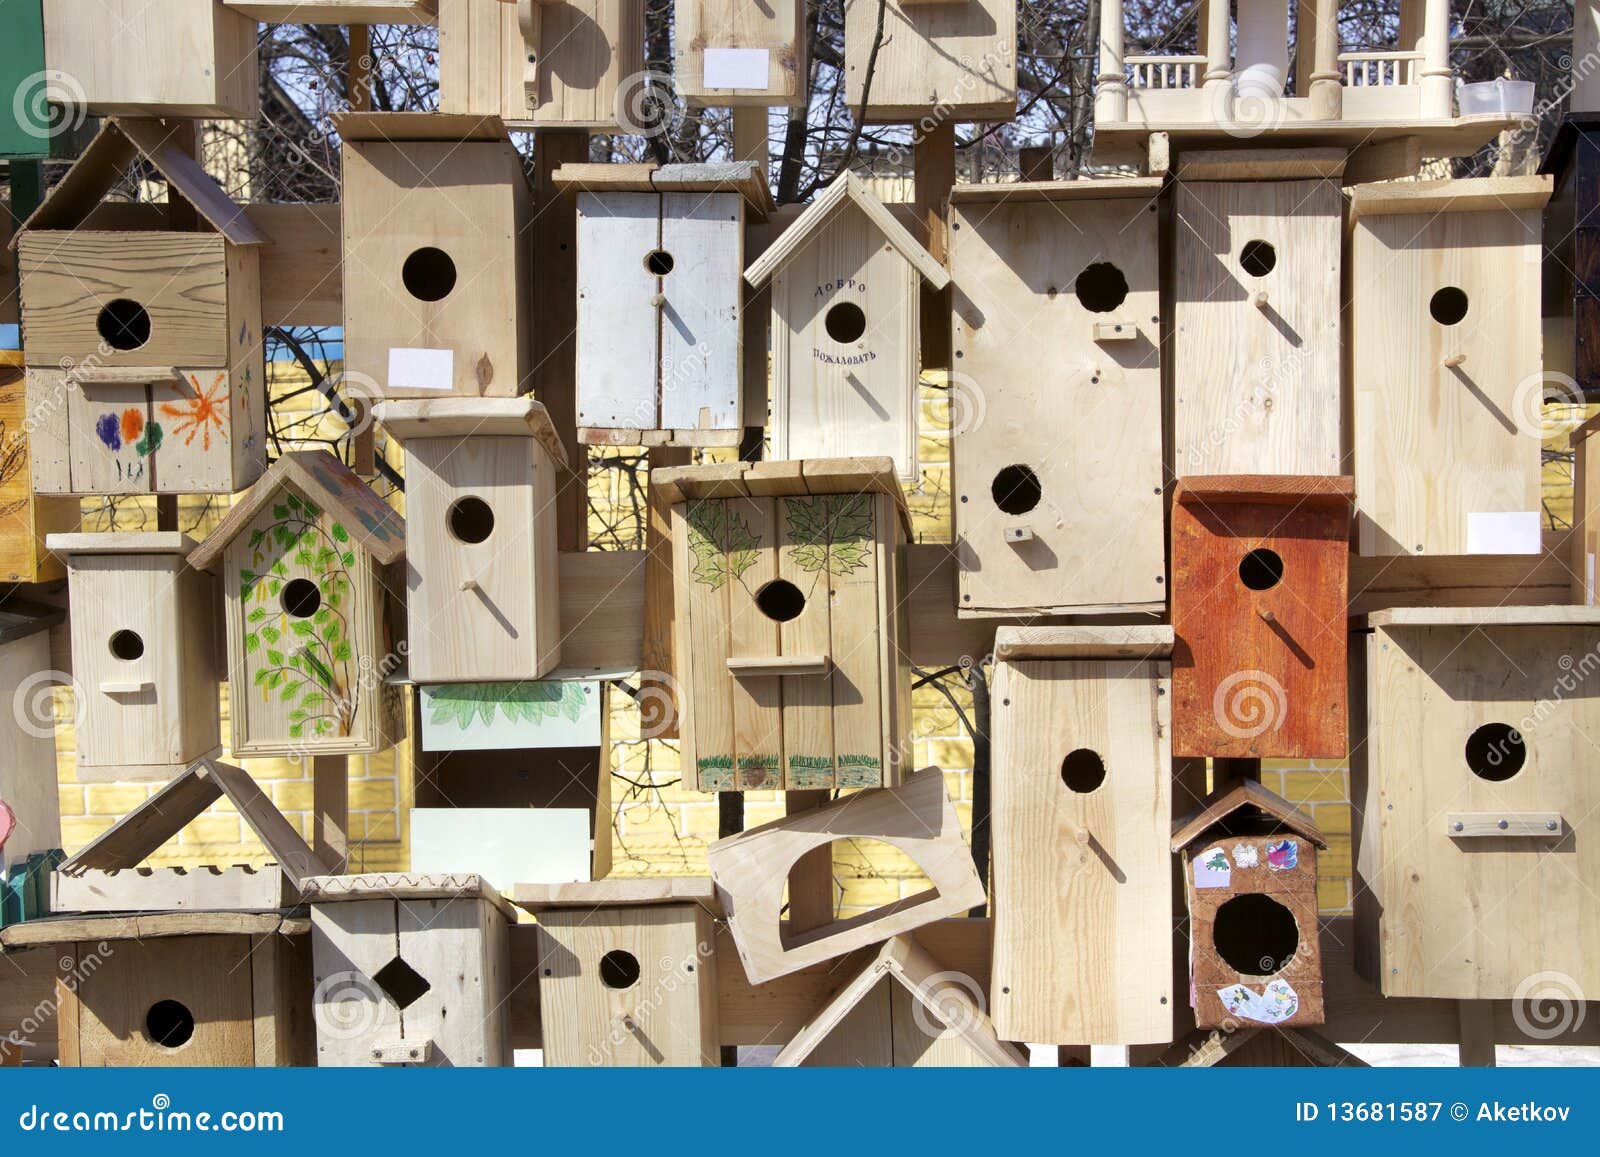 Woodcrete Nest Boxes | Buy Online at Vine House Farm